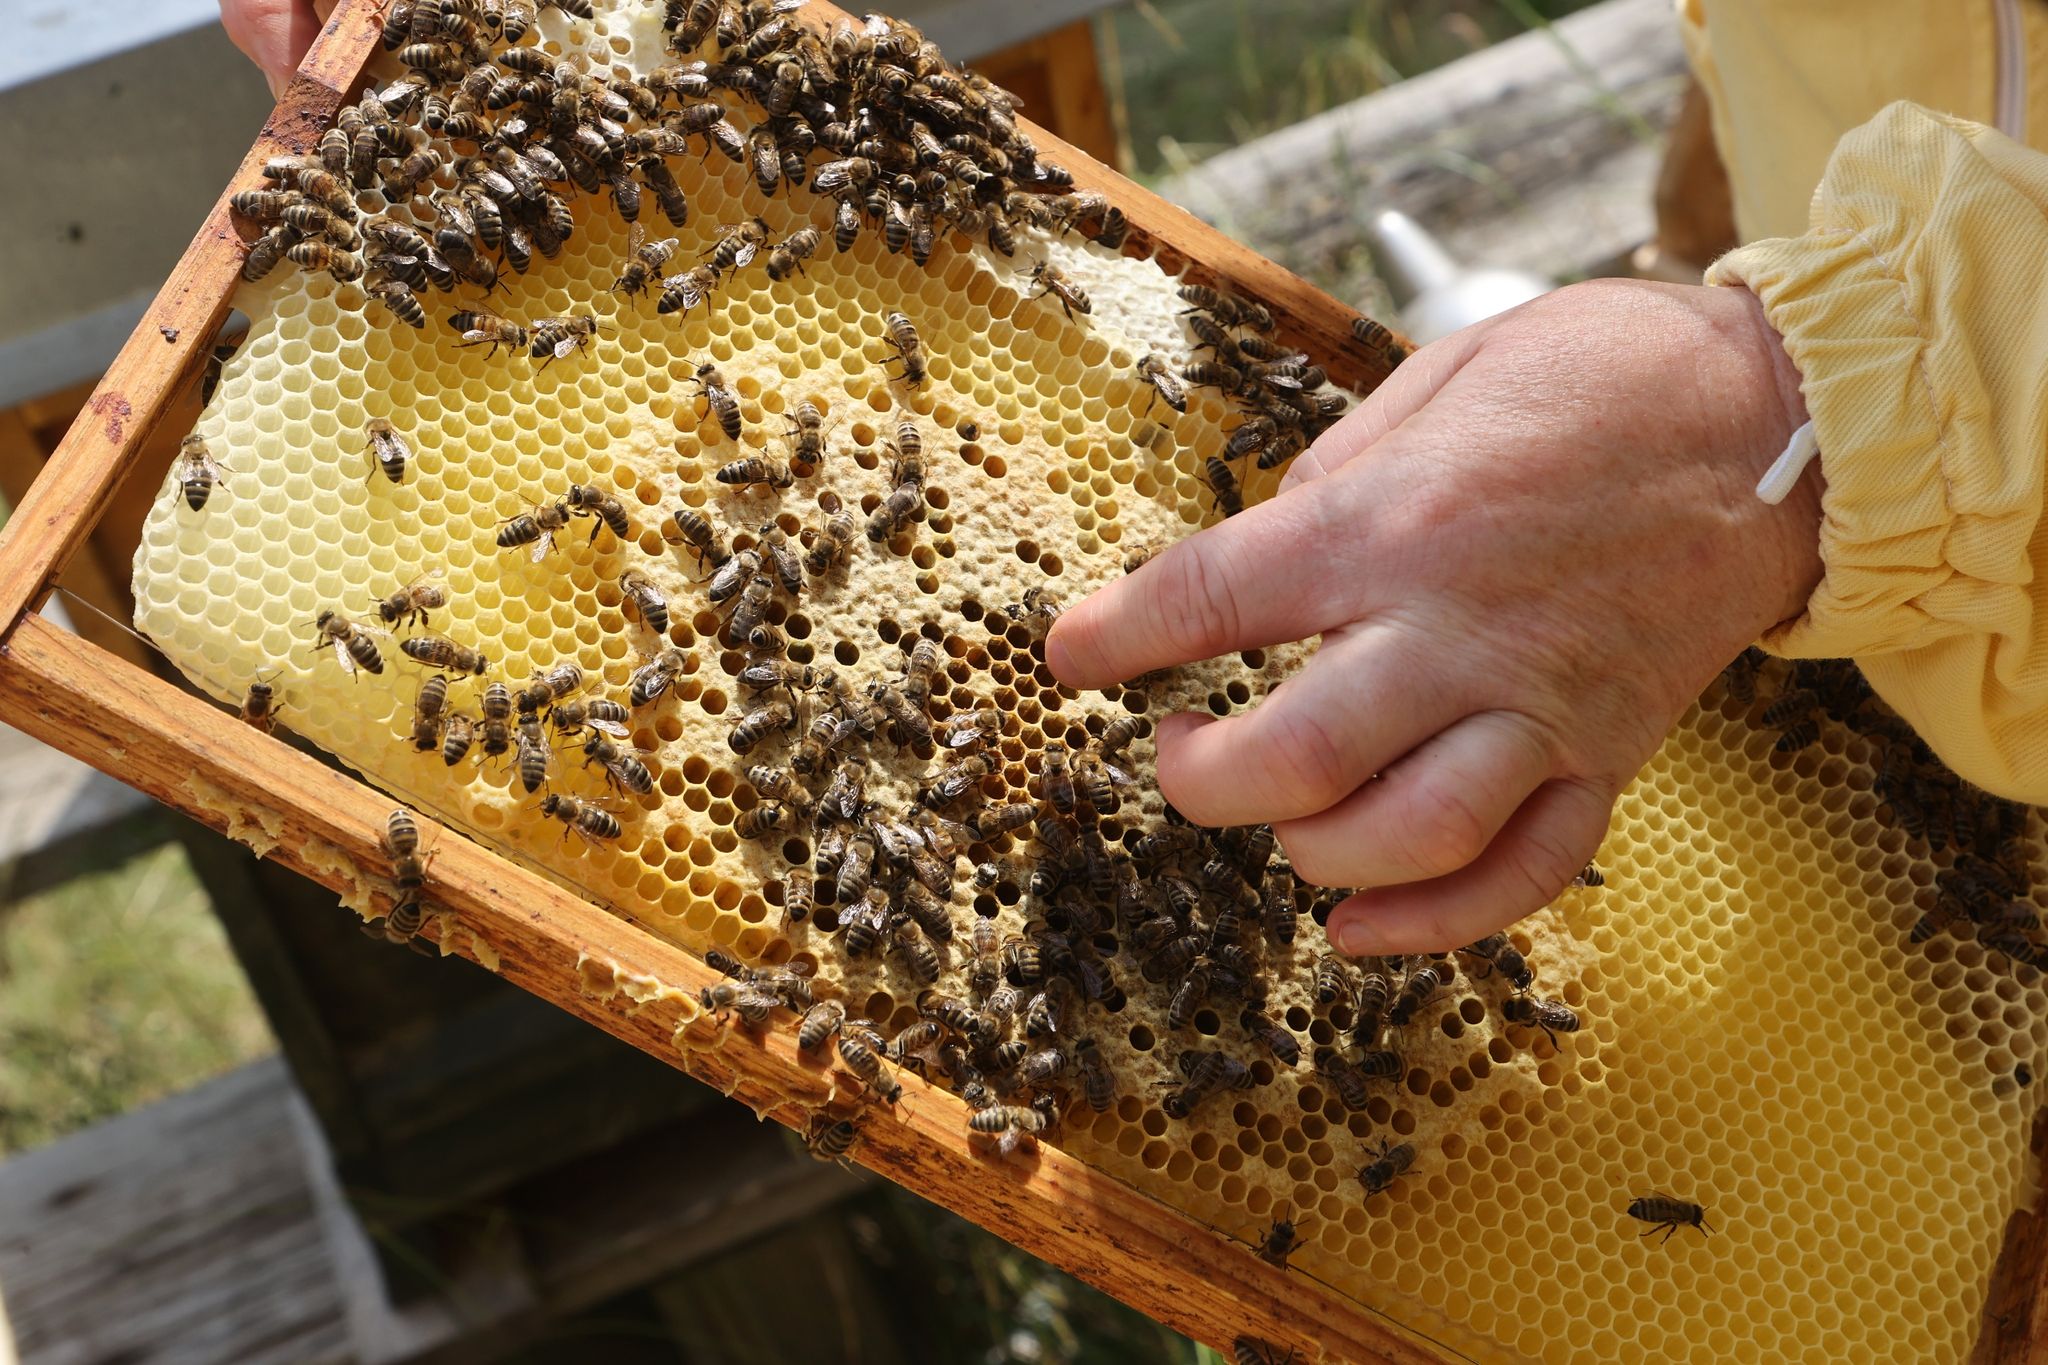 Eine Imkerin zeigt die Produktion von Honig an einem Bienenstock.